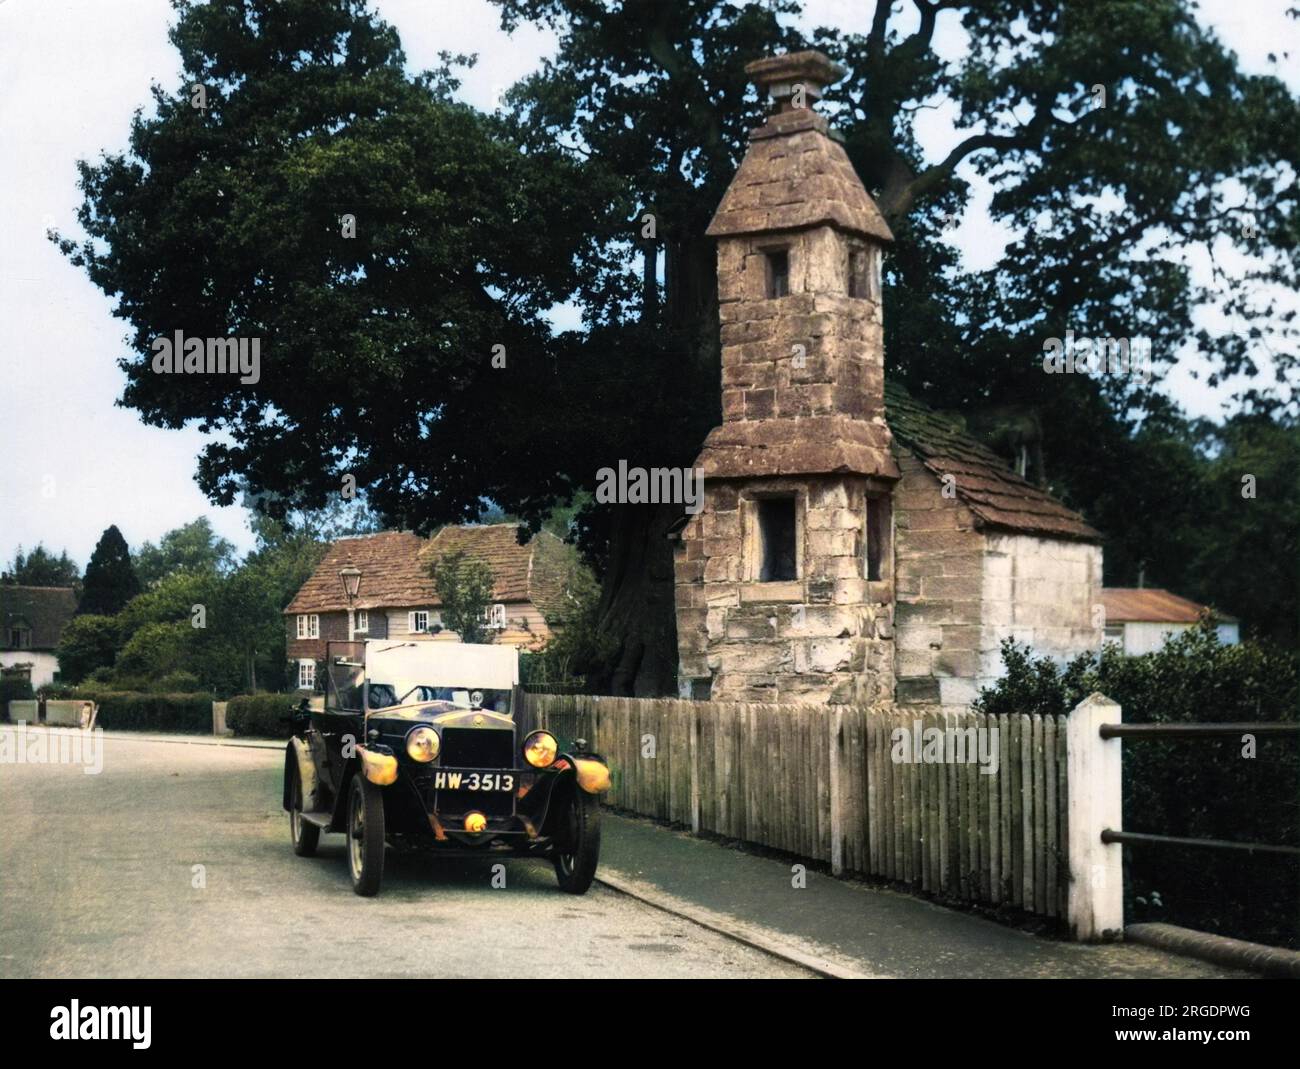 Il recinto del villaggio, accanto alla strada e adiacente allo stagno, Lingfield, Surrey, Inghilterra. Qui i delinquenti e simili sono stati puniti. In origine era un santuario a lato della strada. Foto Stock